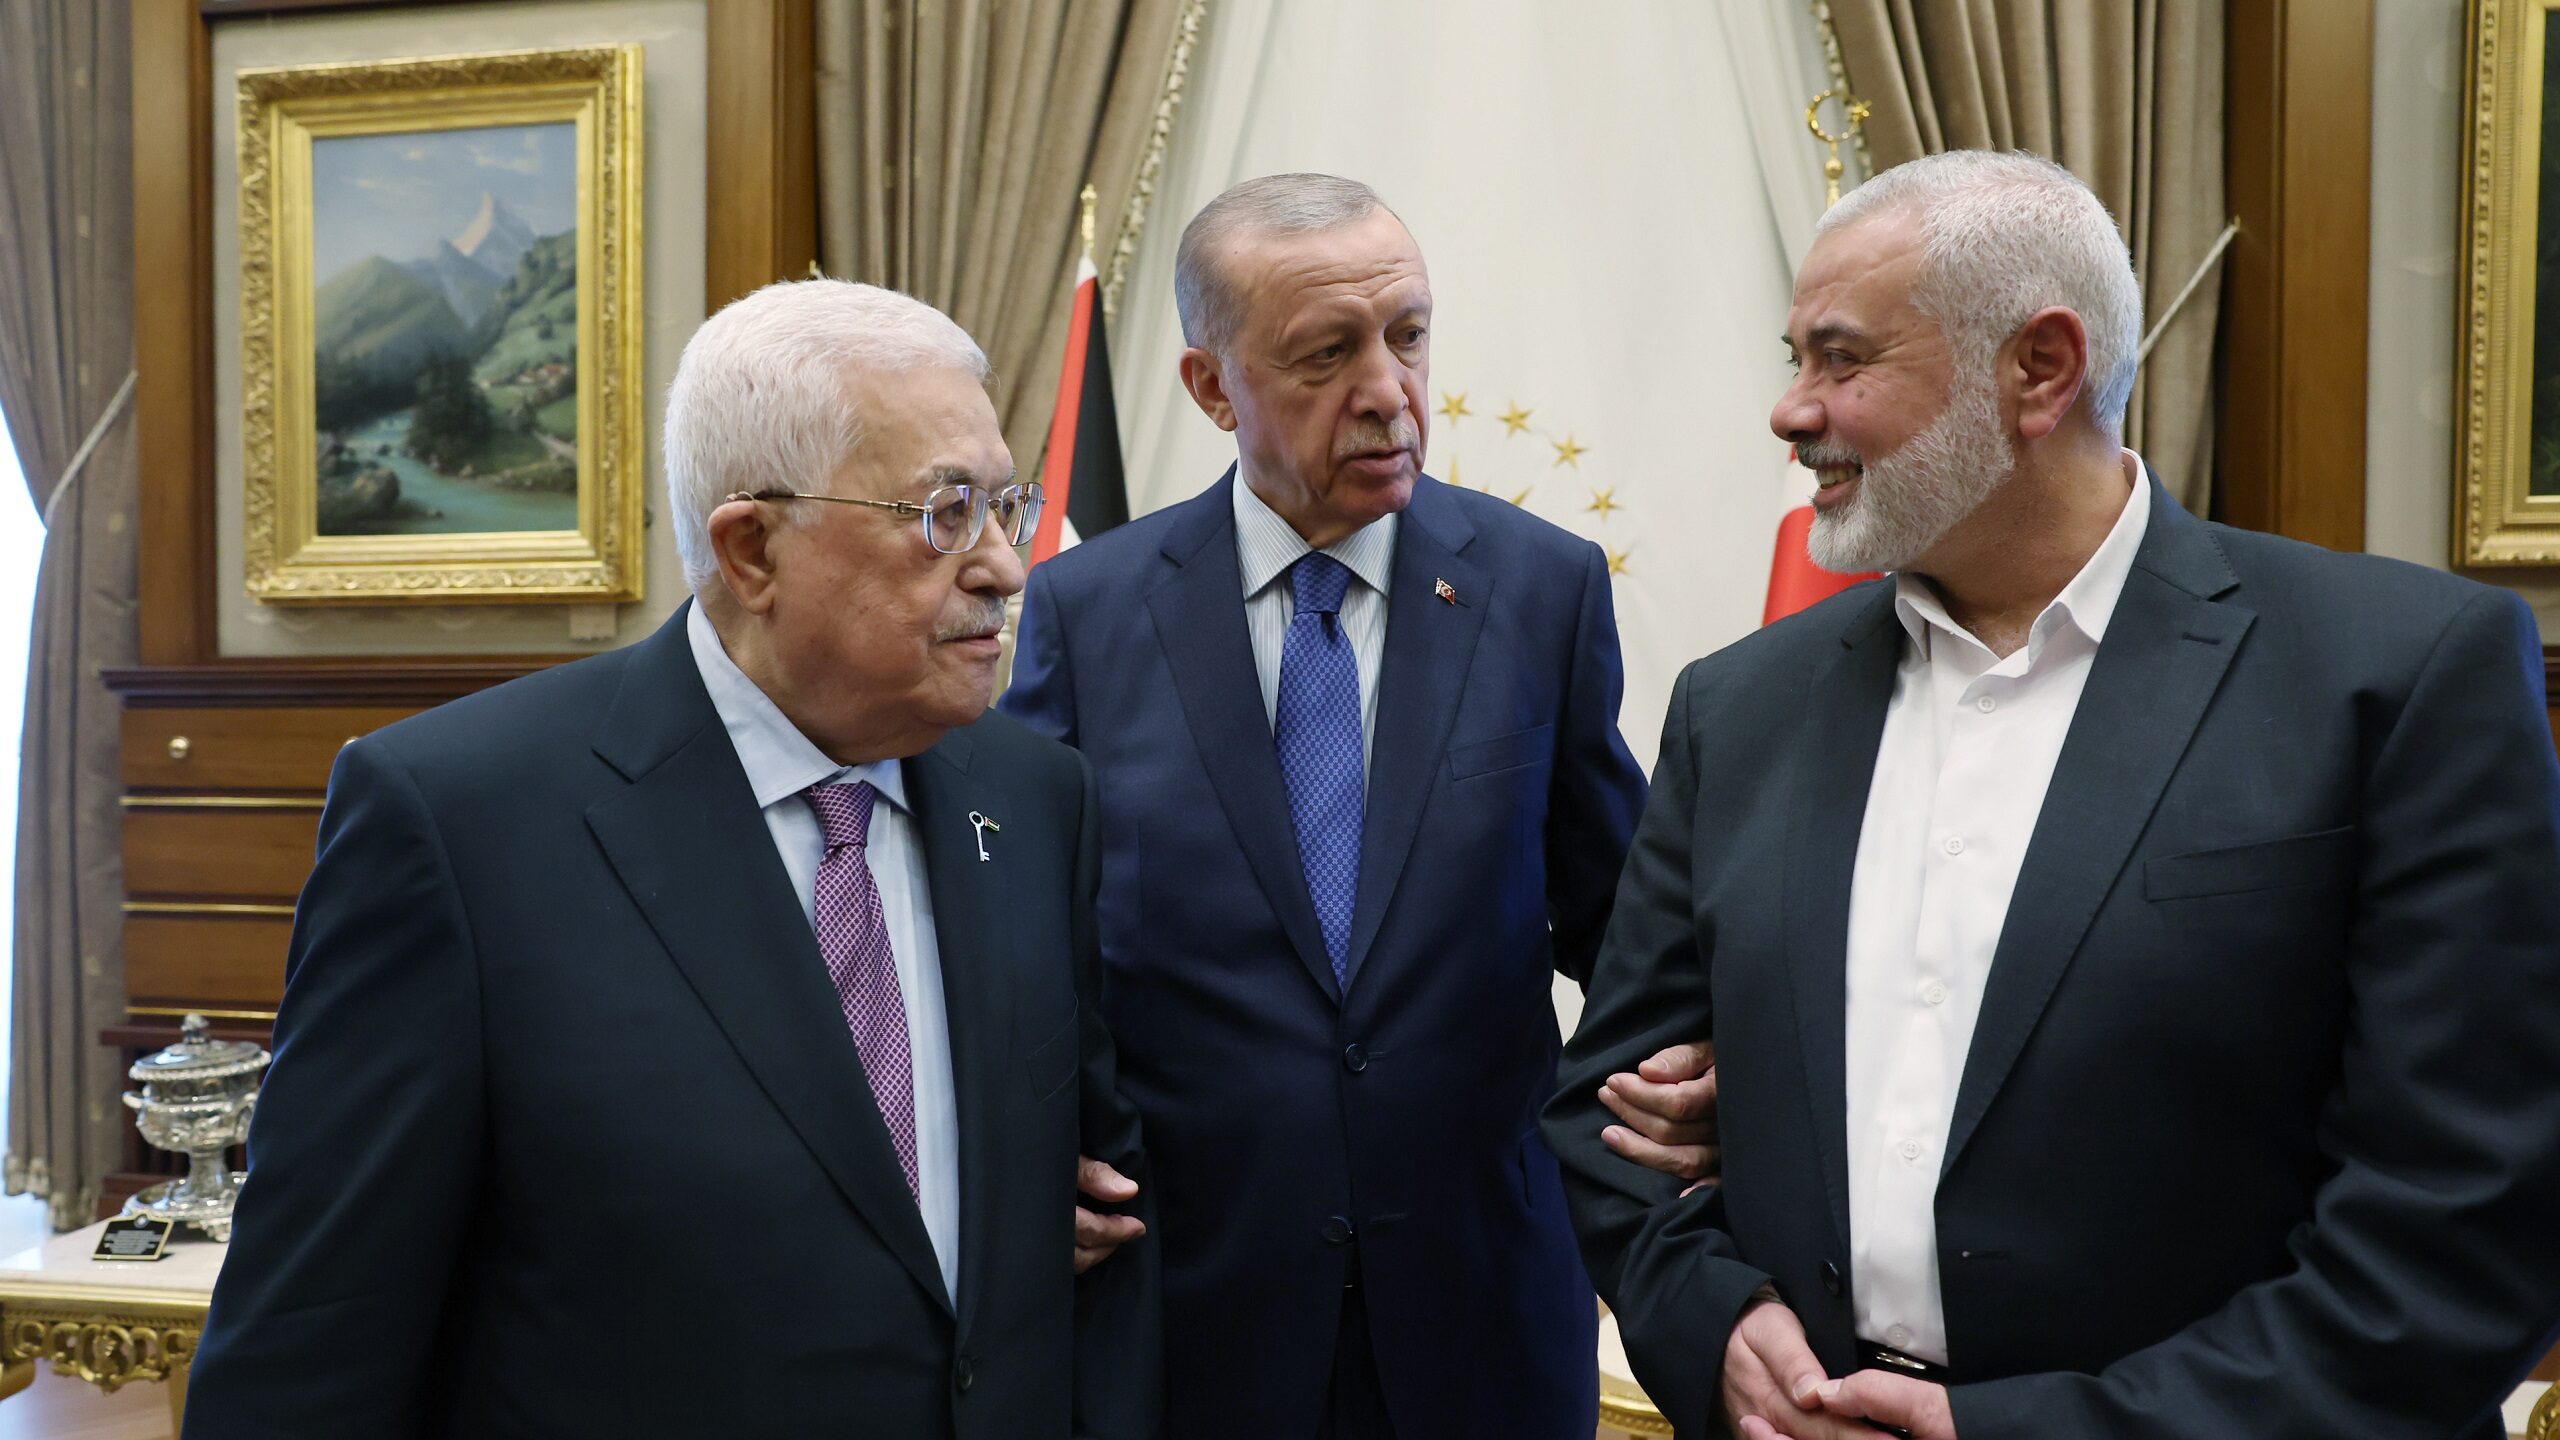 Erdogan Hosts Historic Meeting Between Feuding Palestinian Leaders